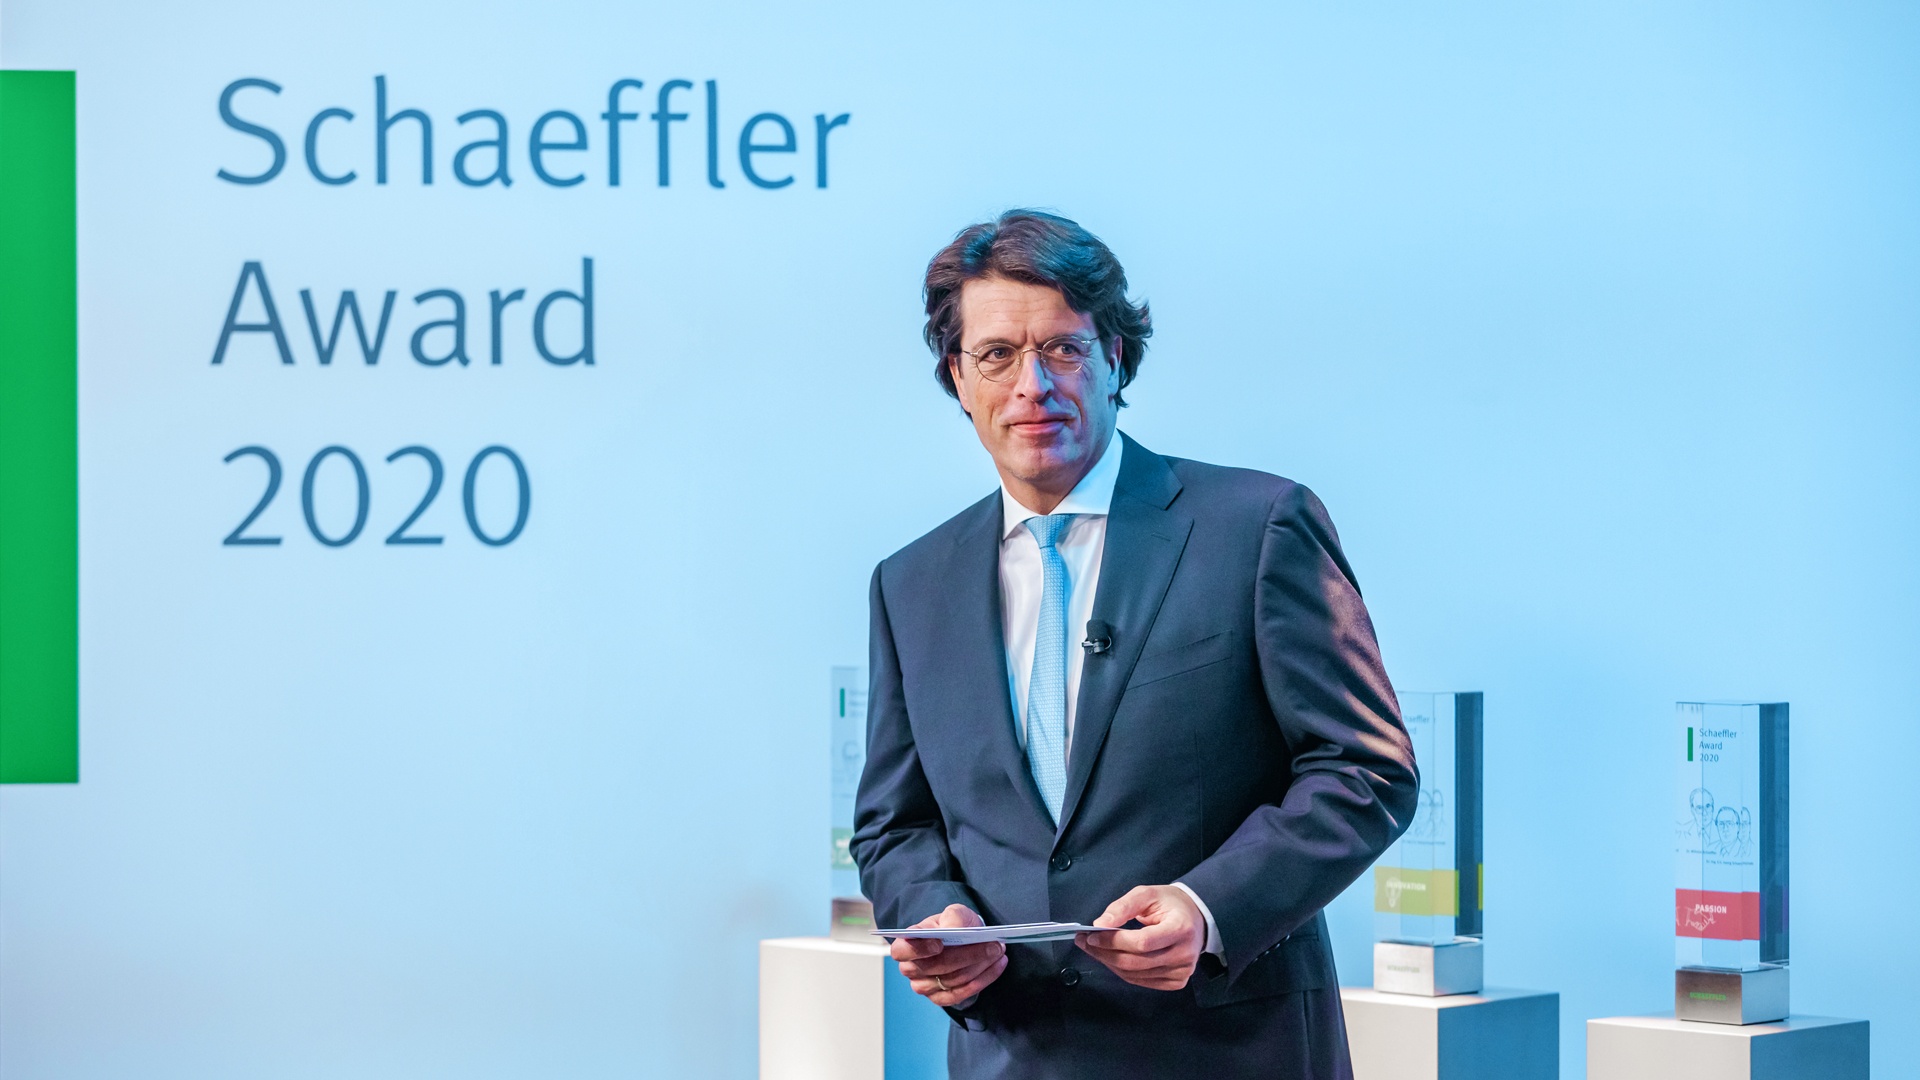 Schaeffler Award 2020